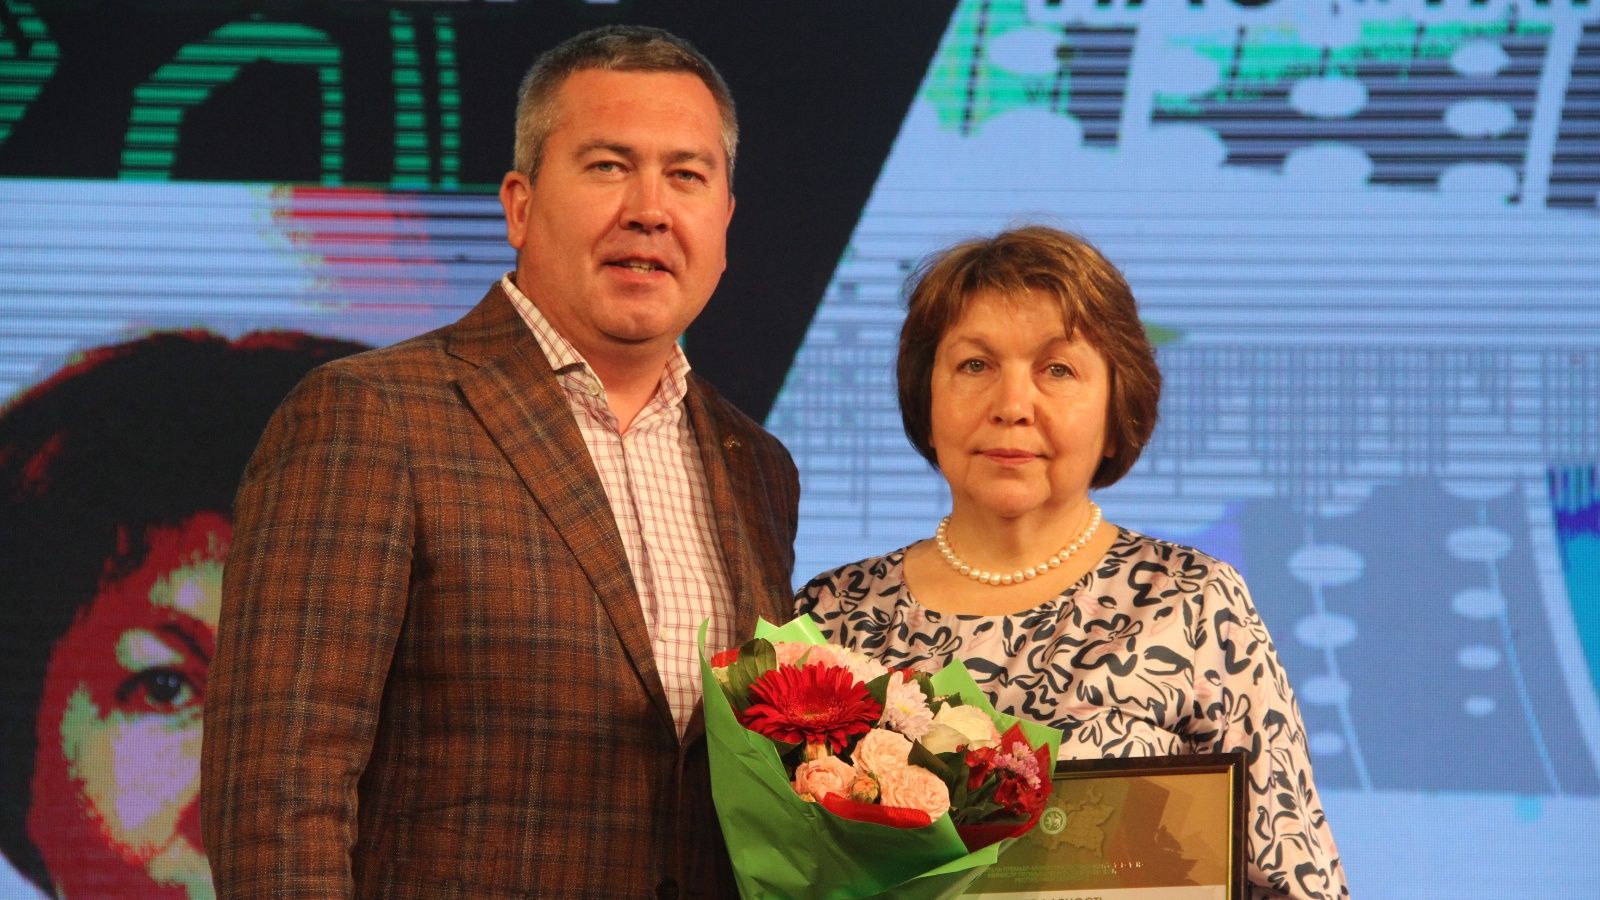 Линар Закиров поздравил коллектив управления «Татнефтеснаб» с 70-летием предприятия